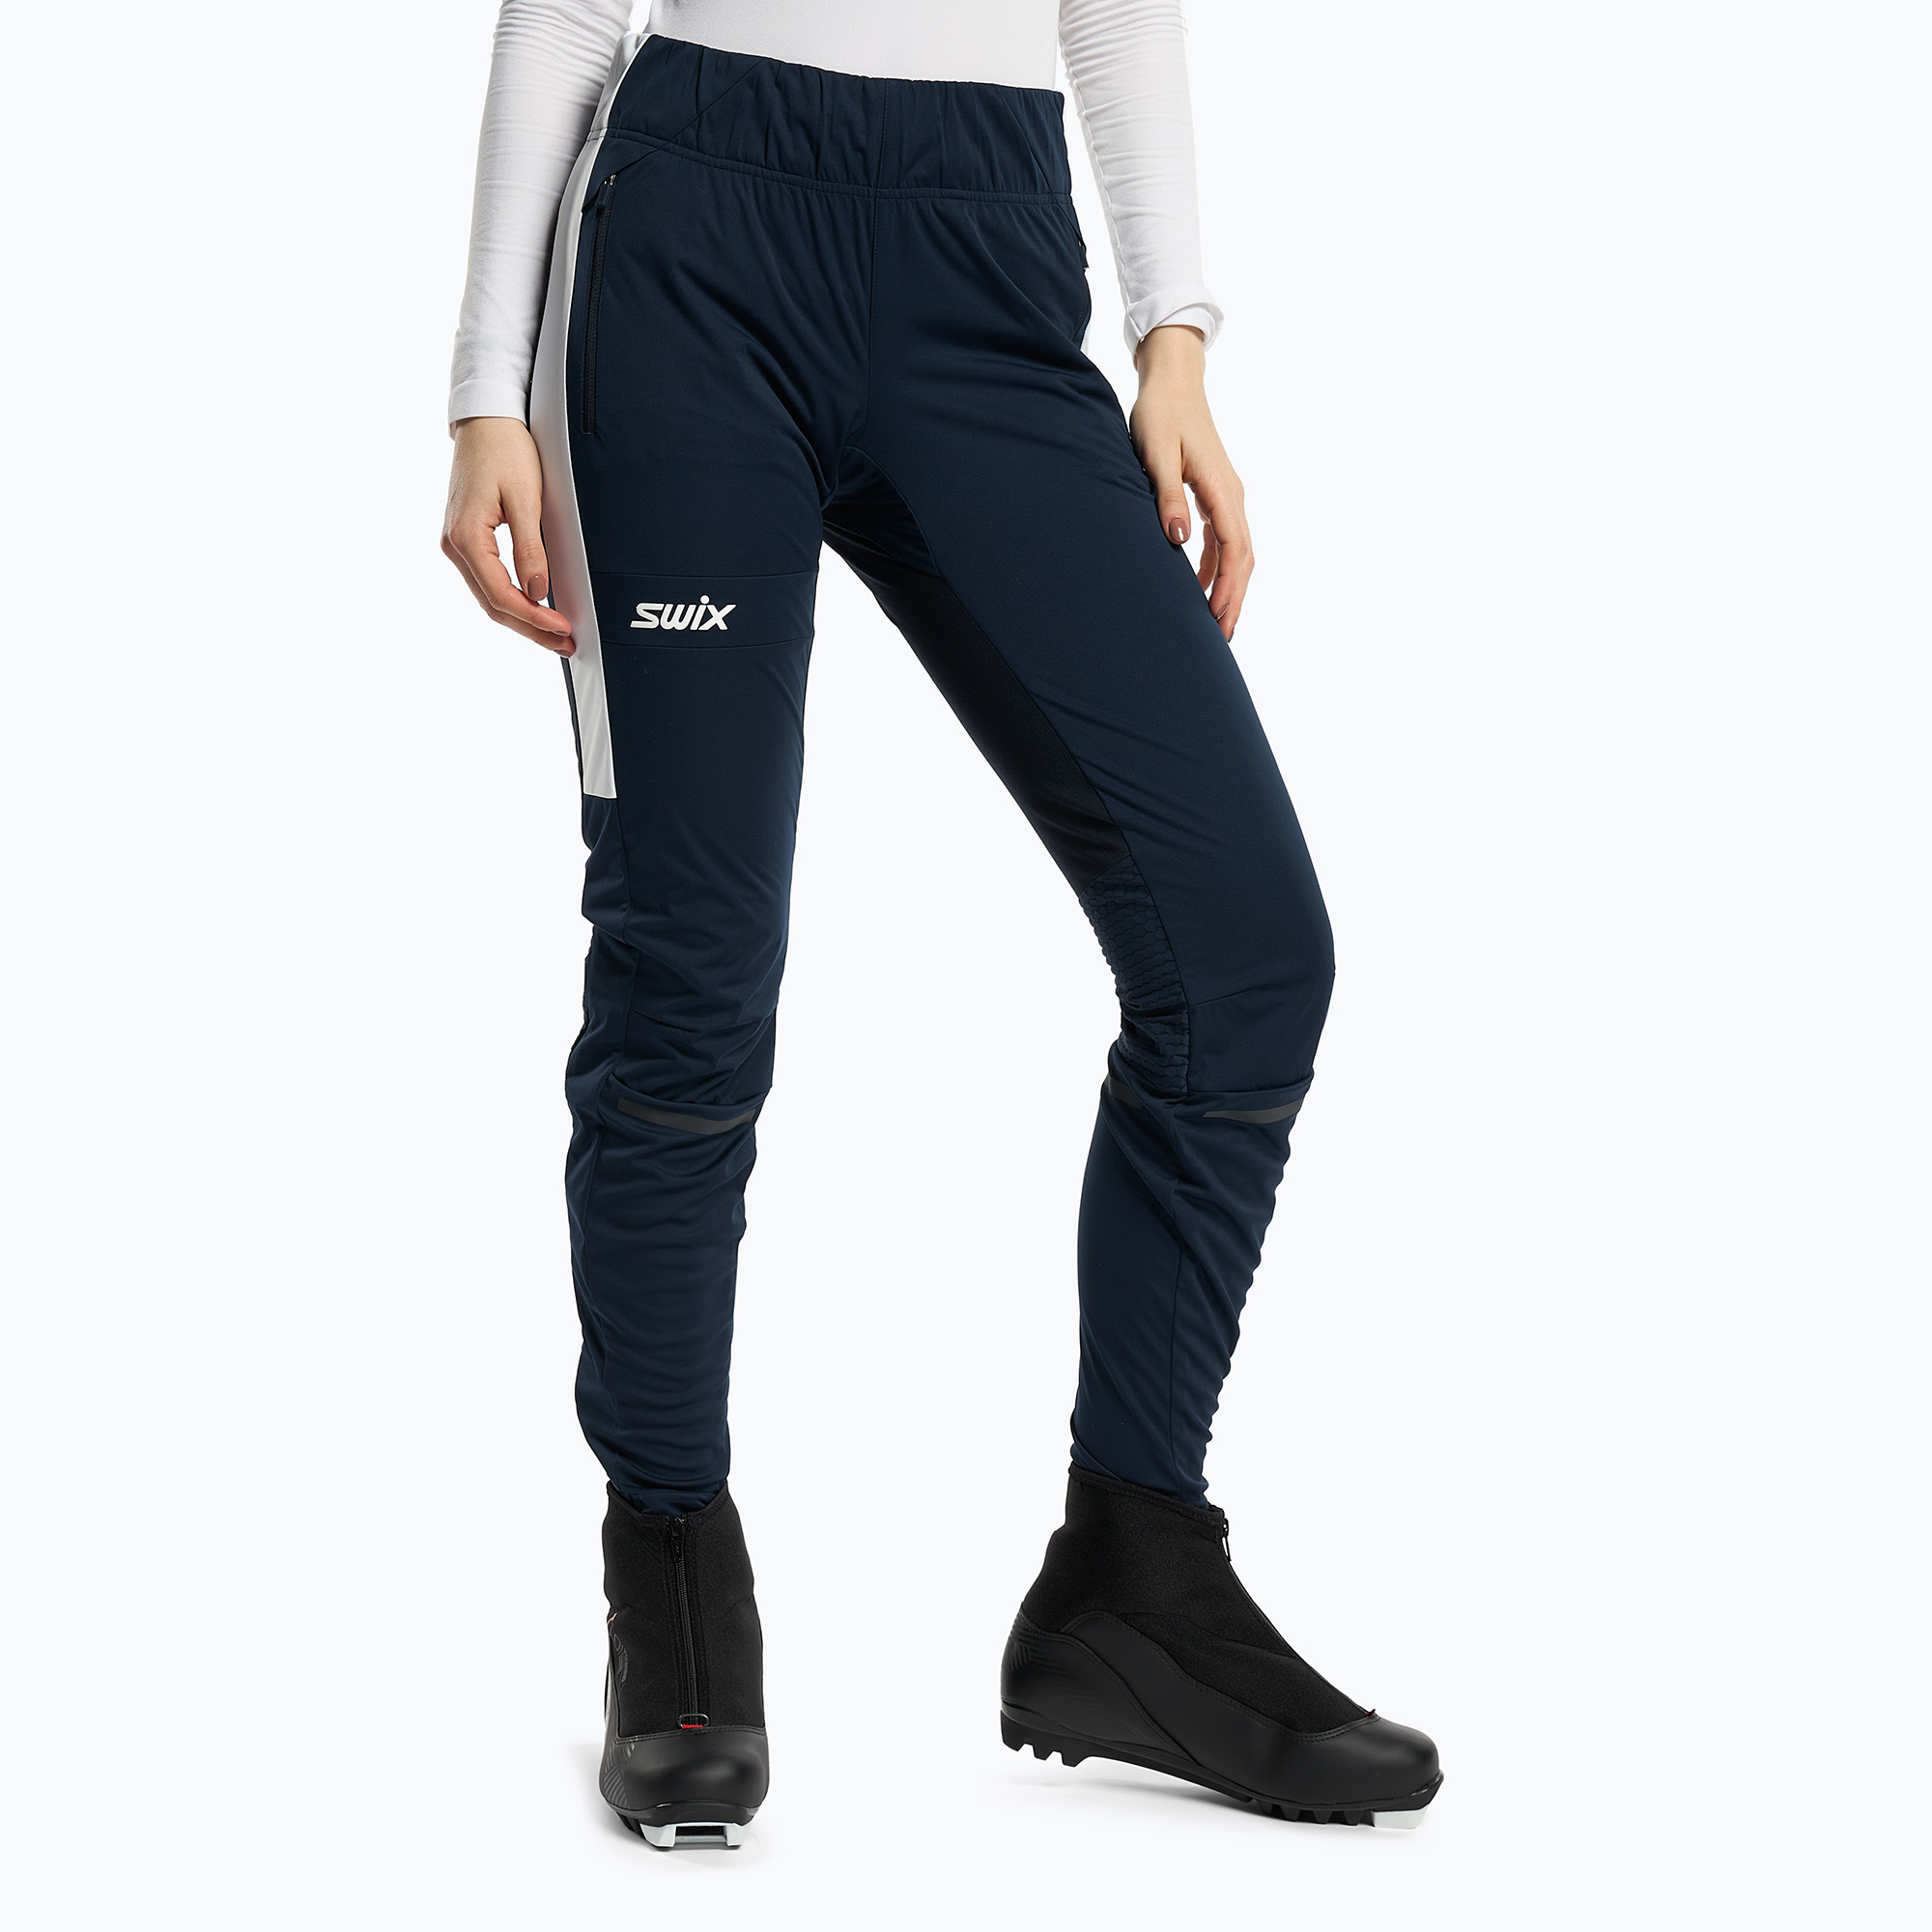 Дамски панталон за ски бягане Swix Dynamic тъмносин 22946-75100-XS